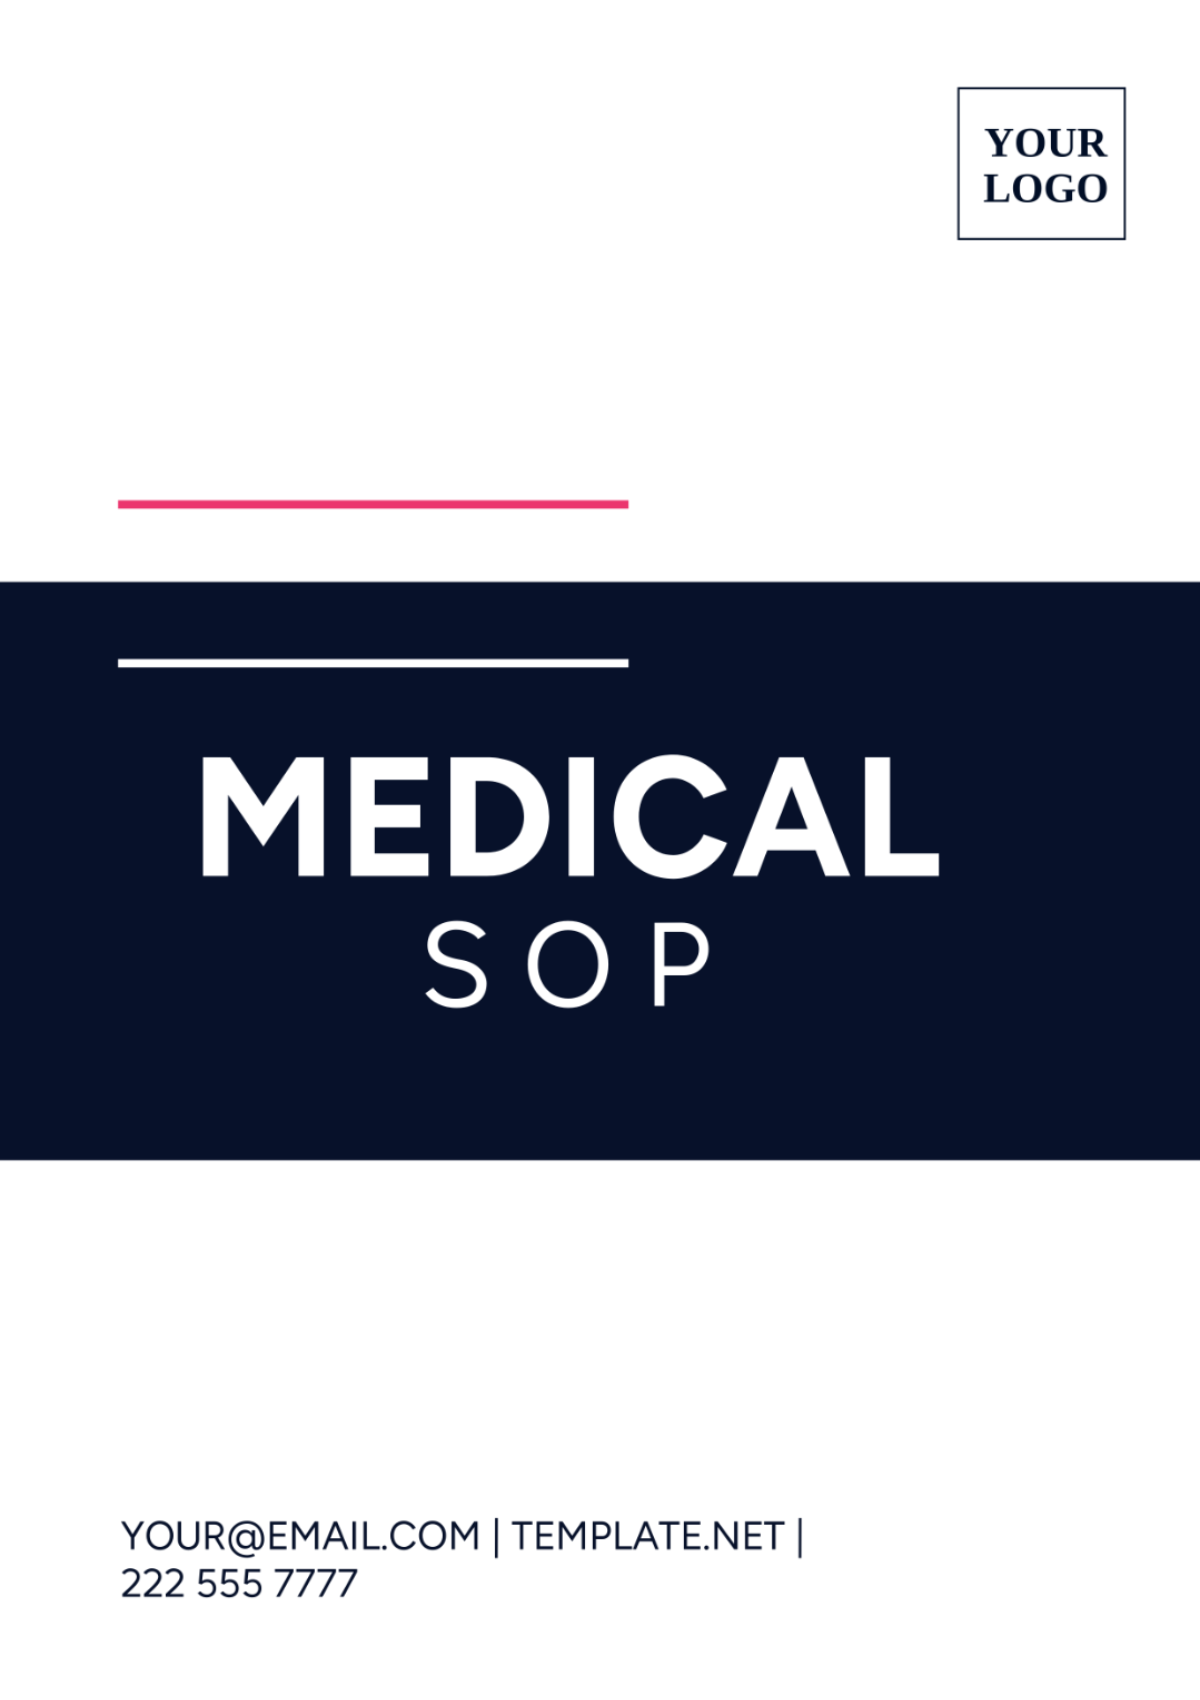 Medical SOP Template